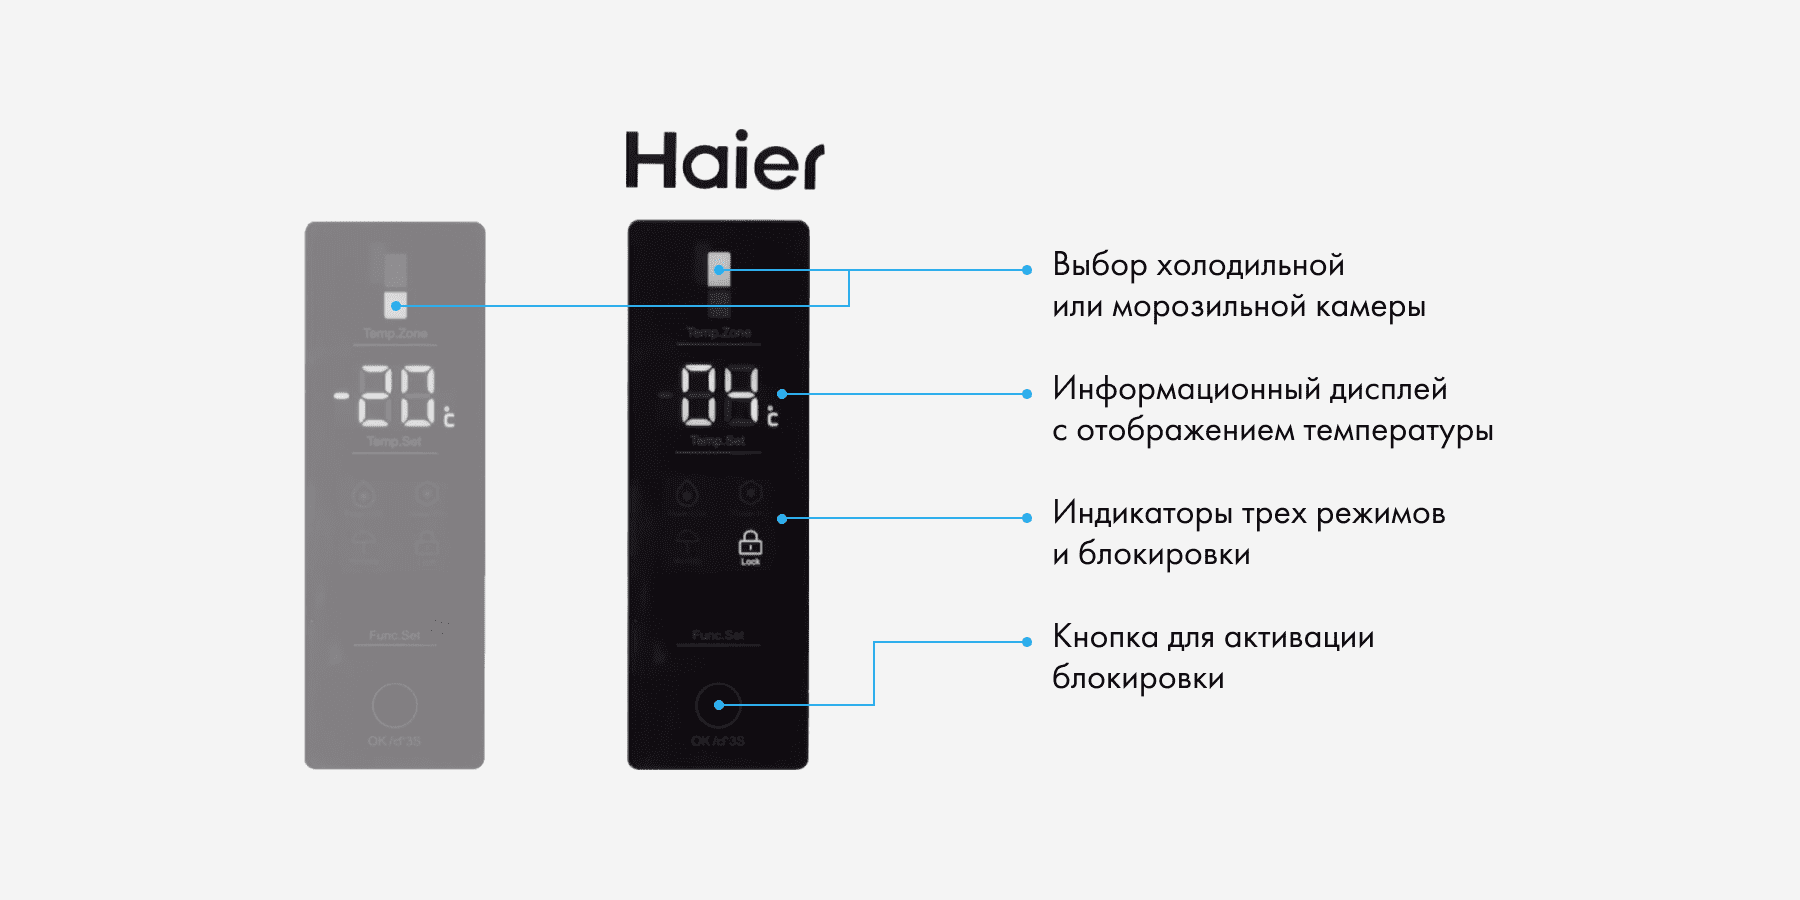 Haier настройки. Холодильник Haier cef535asg. Холодильник Хаер как настроить температуру. Холодильник Haier как выставить температуру. Как настроить холодильник Хайер на дисплее температуру.